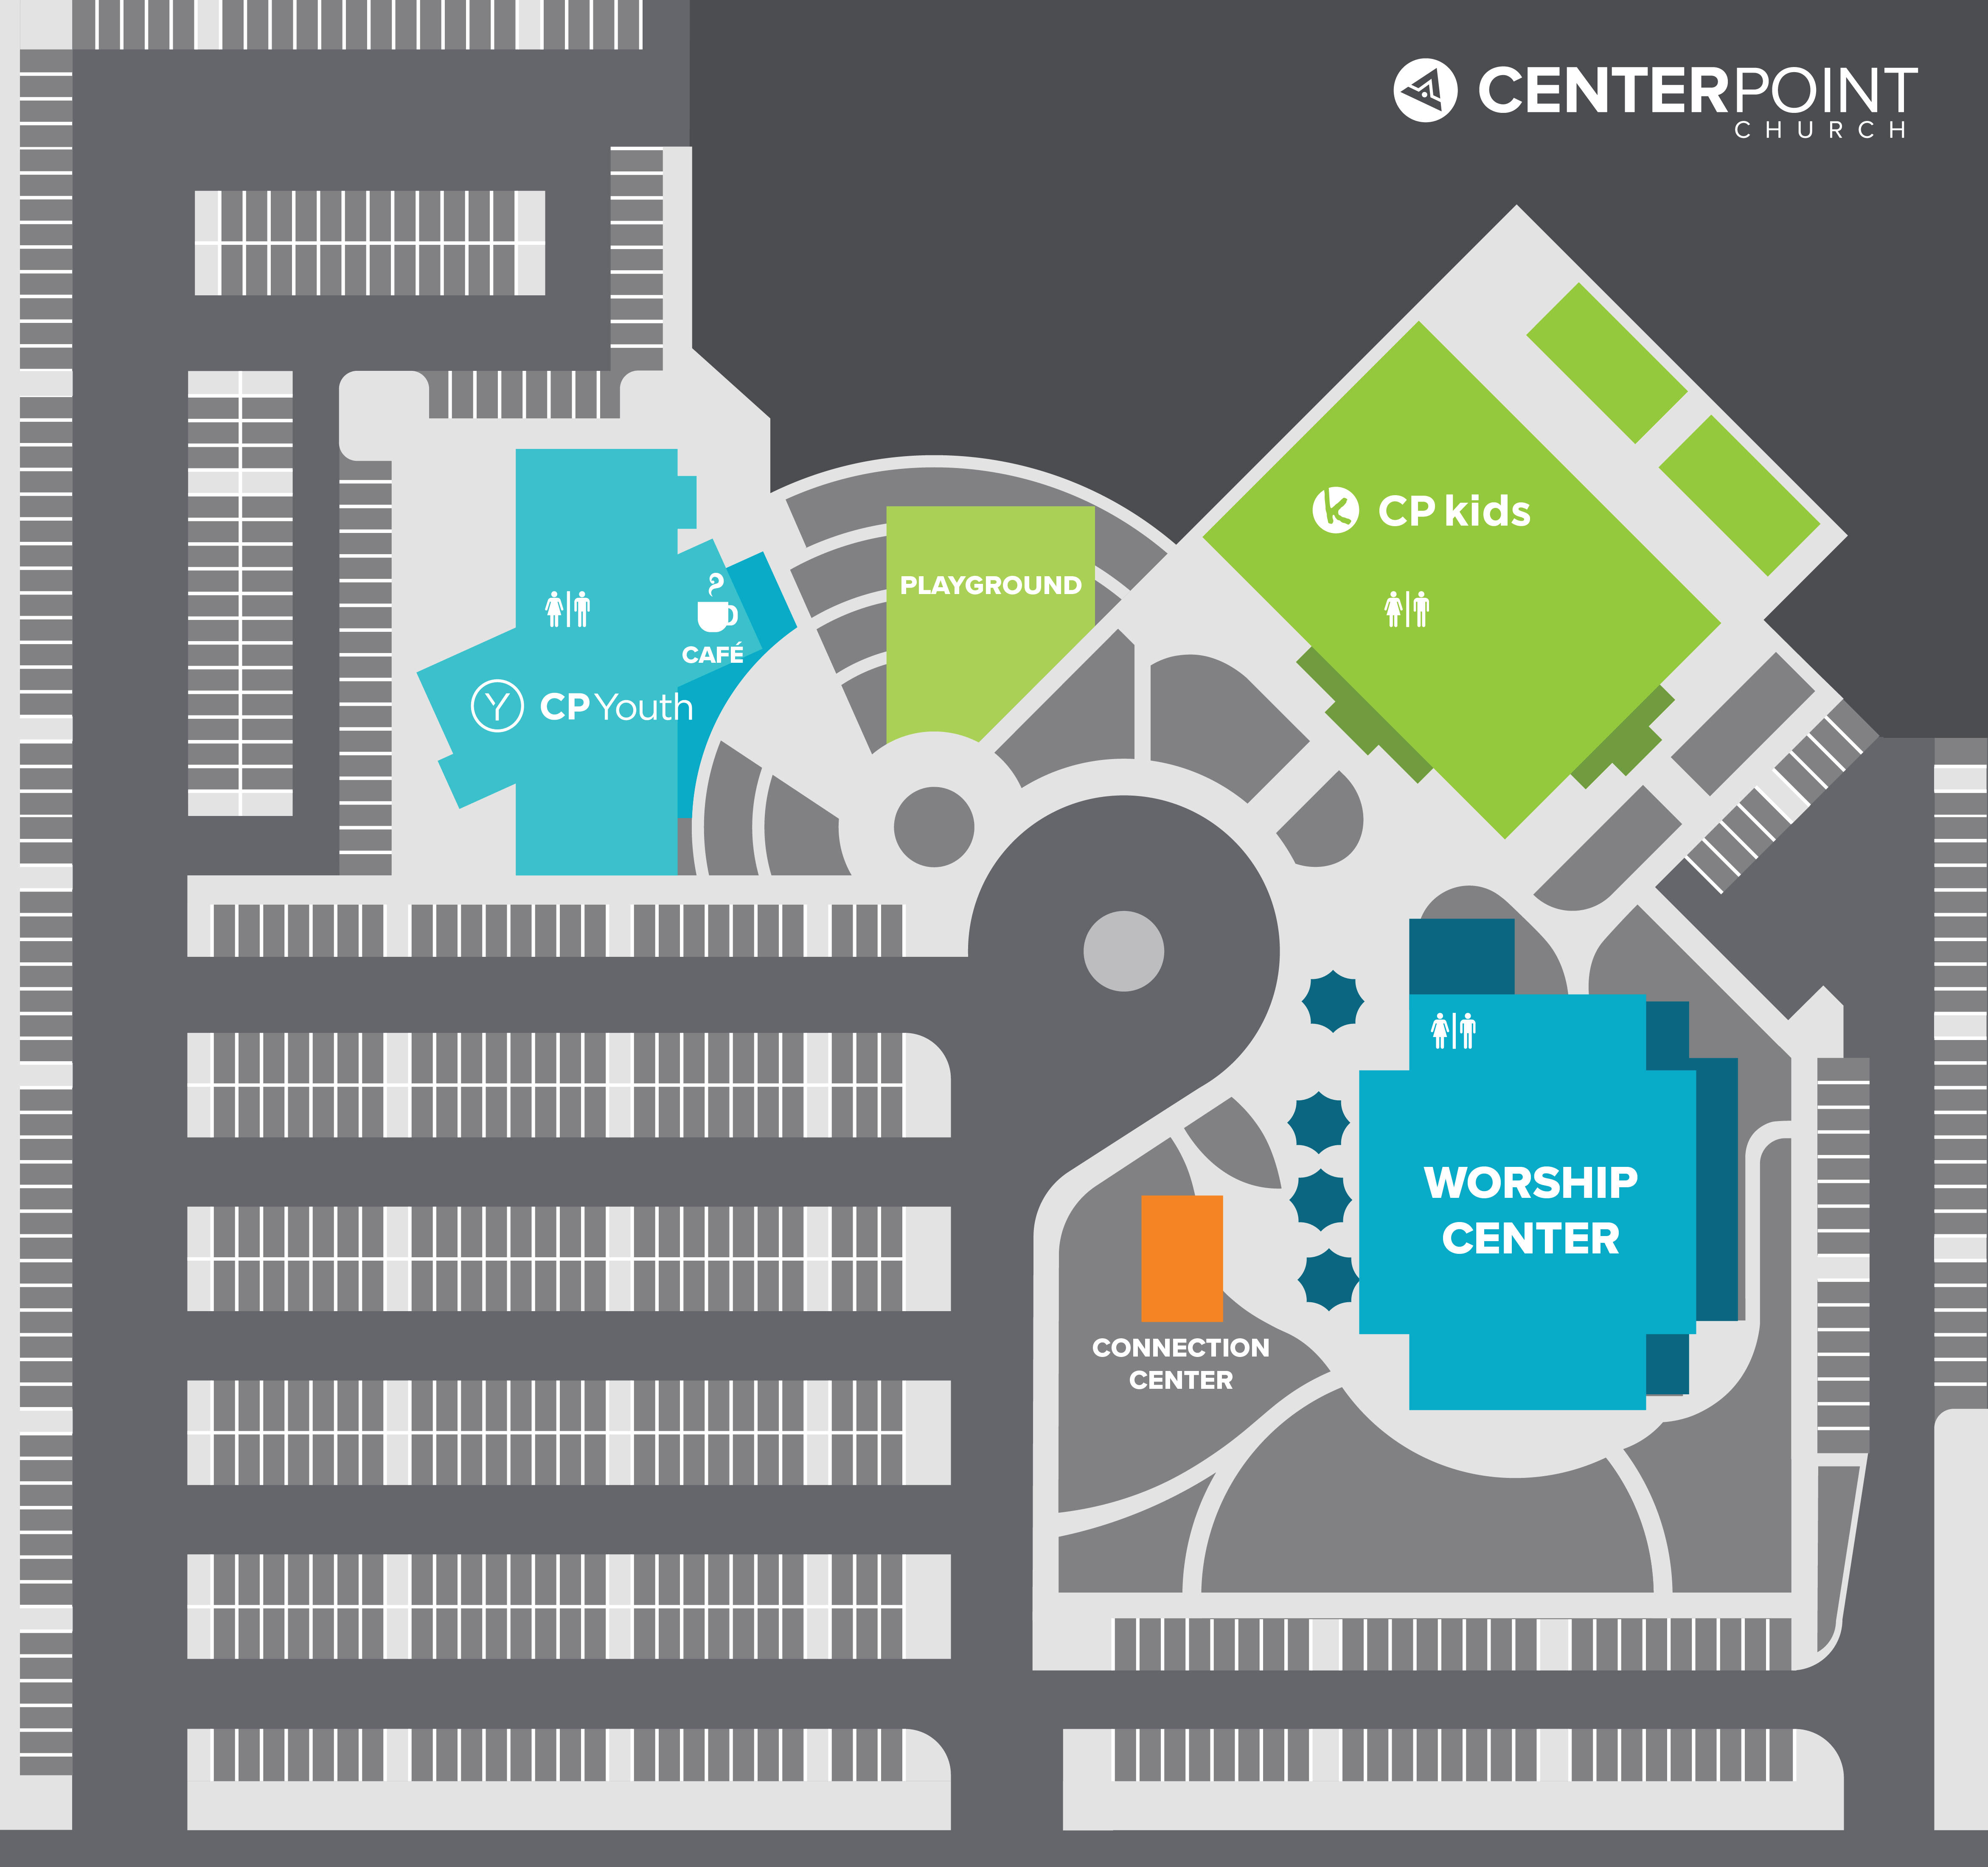 Centerpoint_Map_1.jpeg